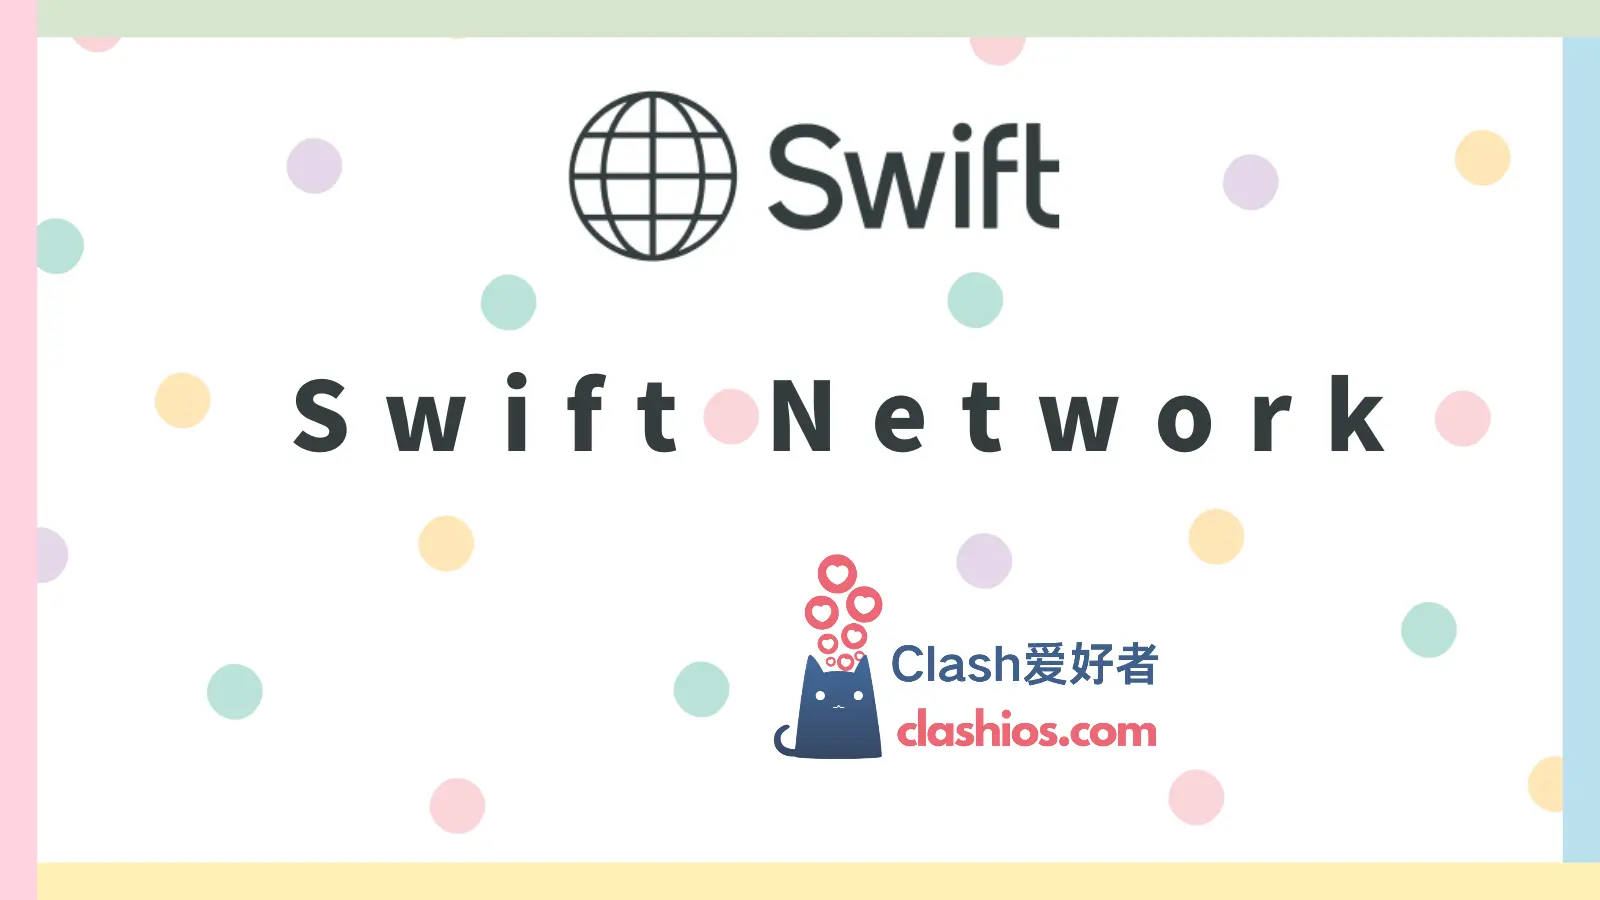 Swift Network 性价比机场推荐